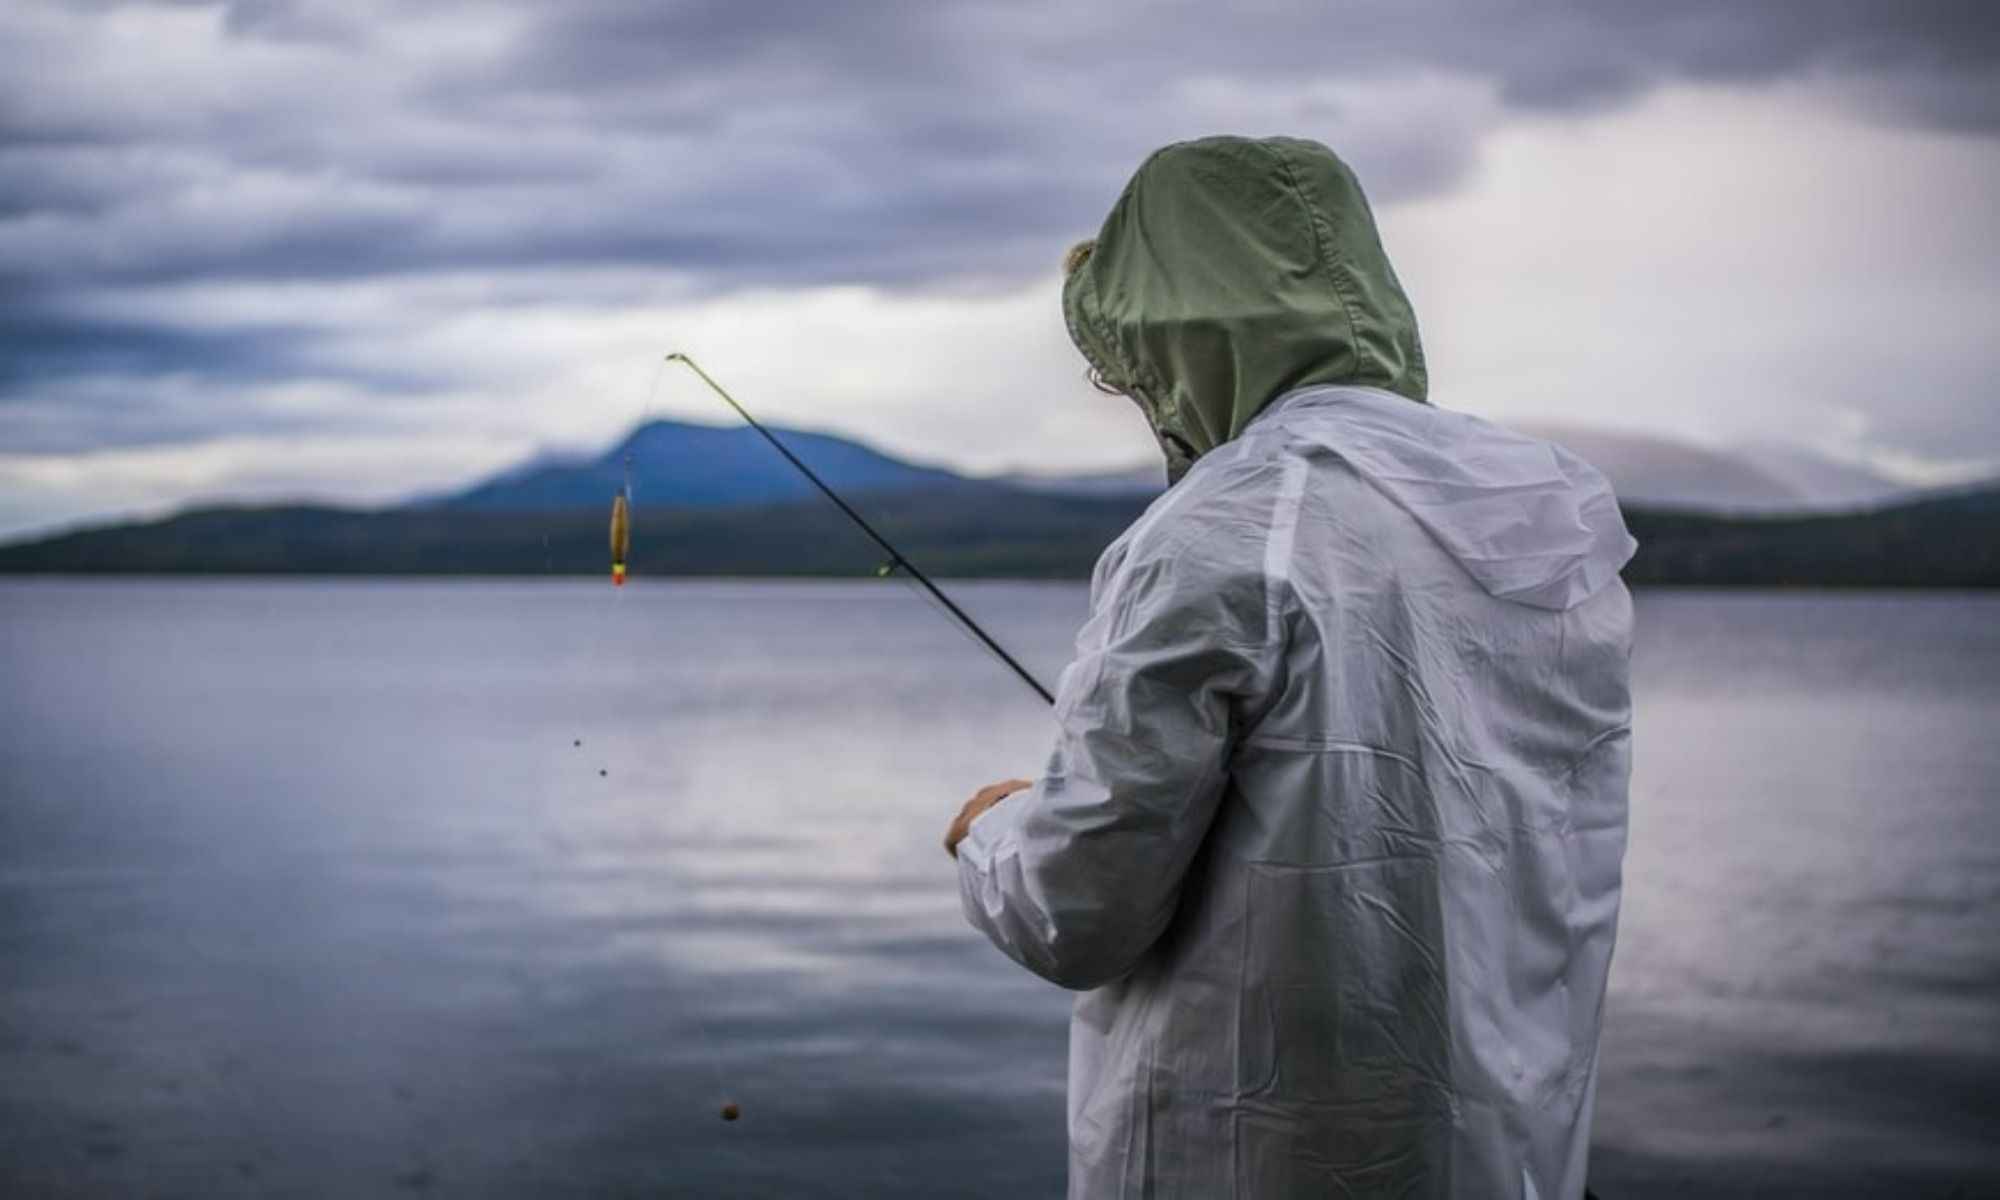  Rain Gear For Fishing